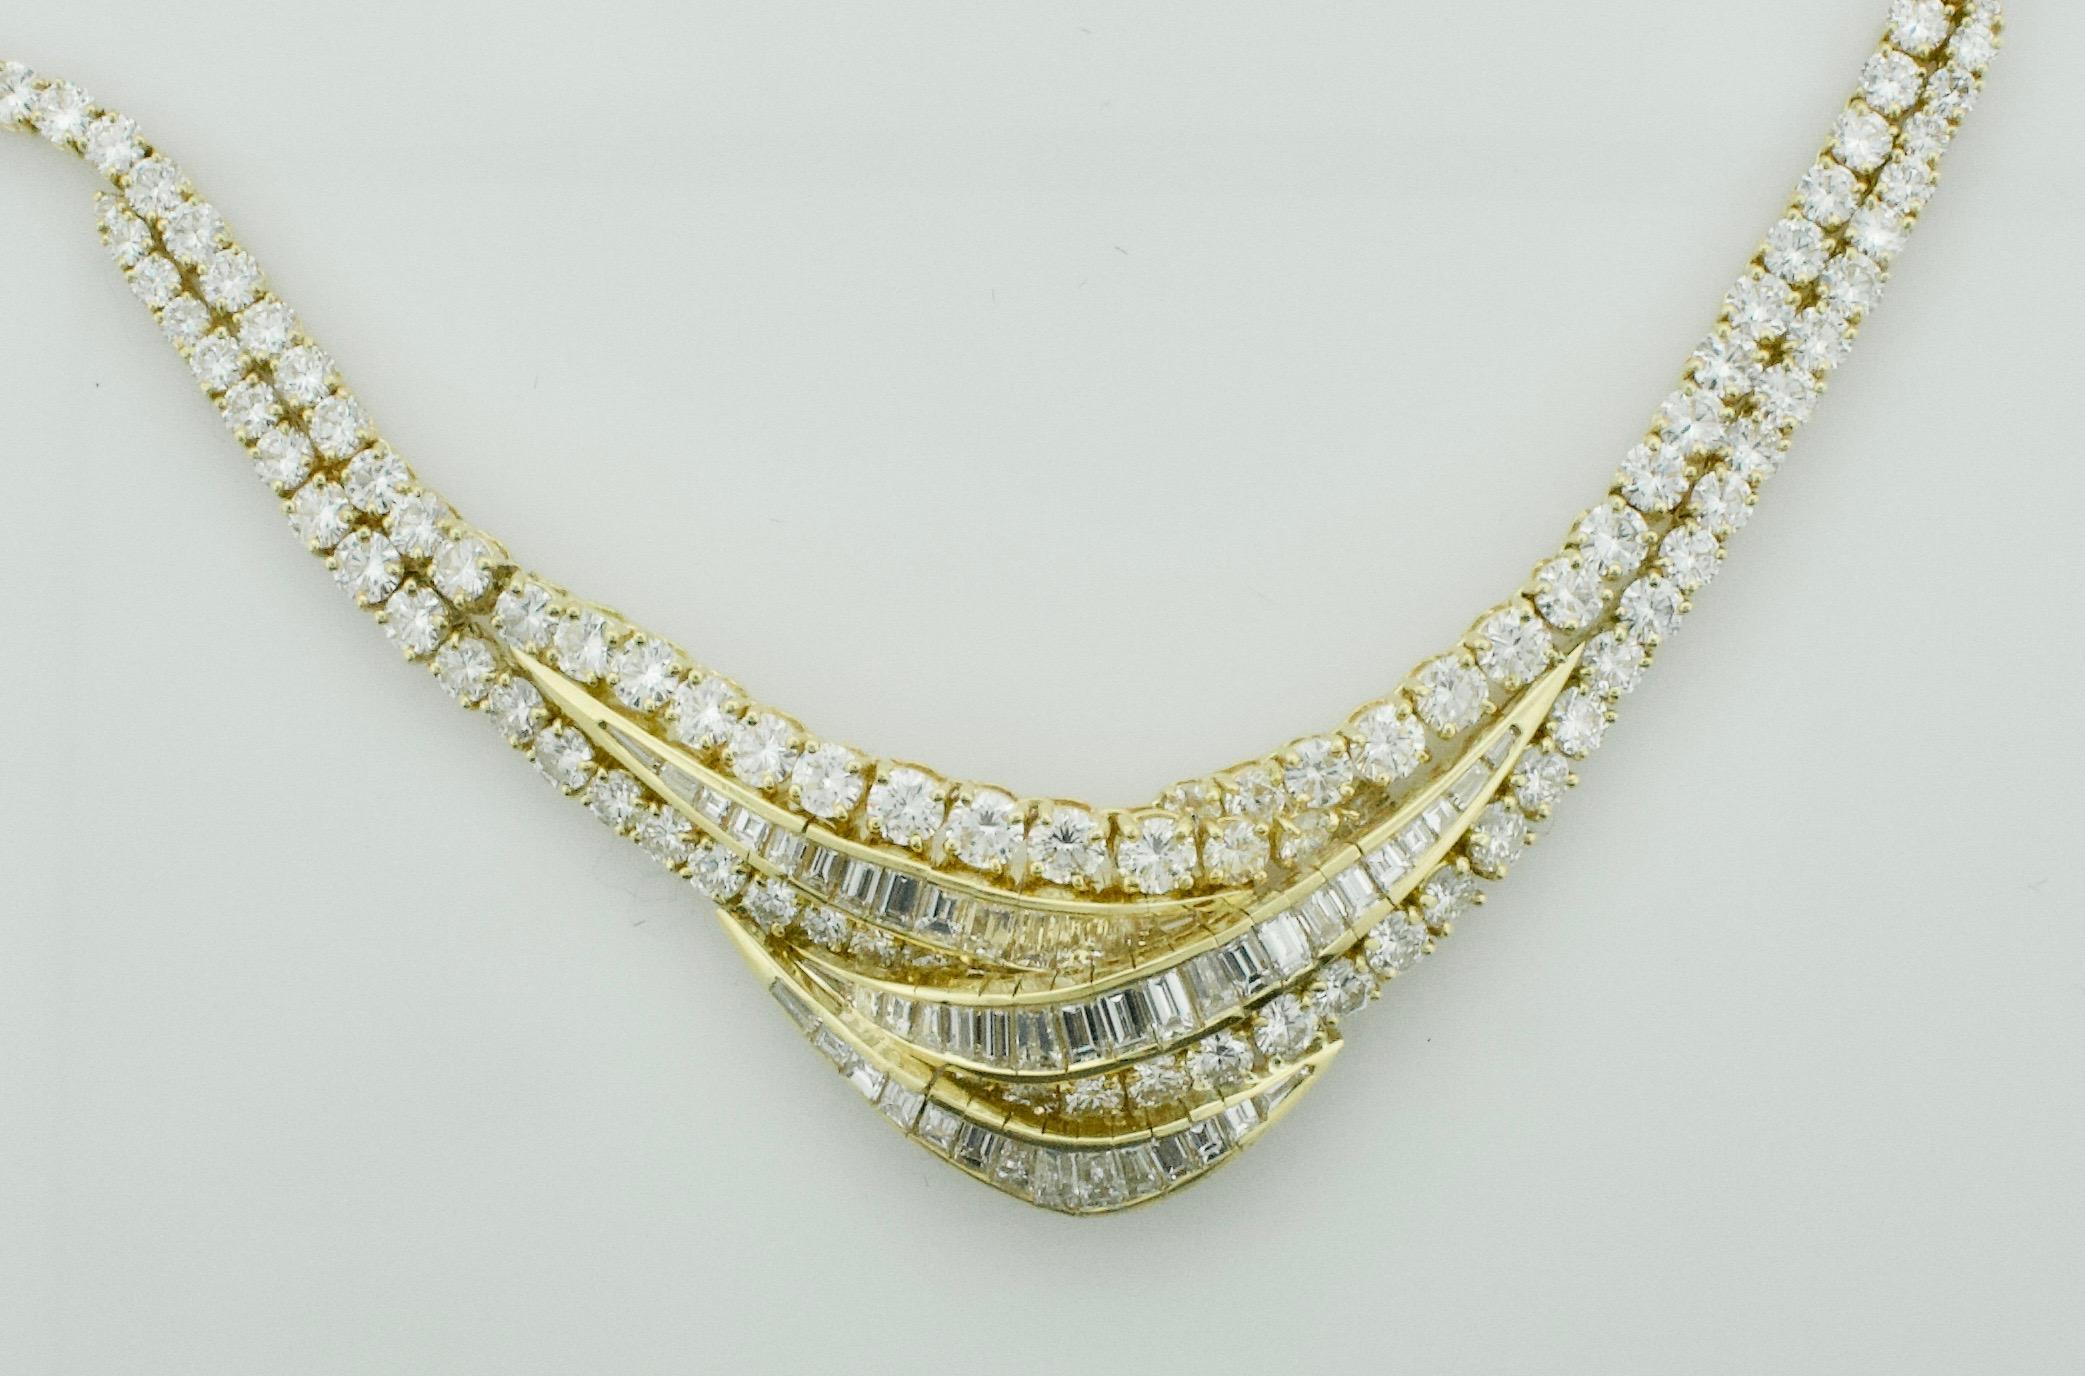 
Wir stellen Ihnen ein wahrhaft exquisites Schmuckstück vor: die Important Diamond Necklace in 18 Karat mit einem atemberaubenden Gesamtgewicht von 28,41 Karat. Diese mit Präzision und unvergleichlicher Eleganz gefertigte Halskette besticht durch